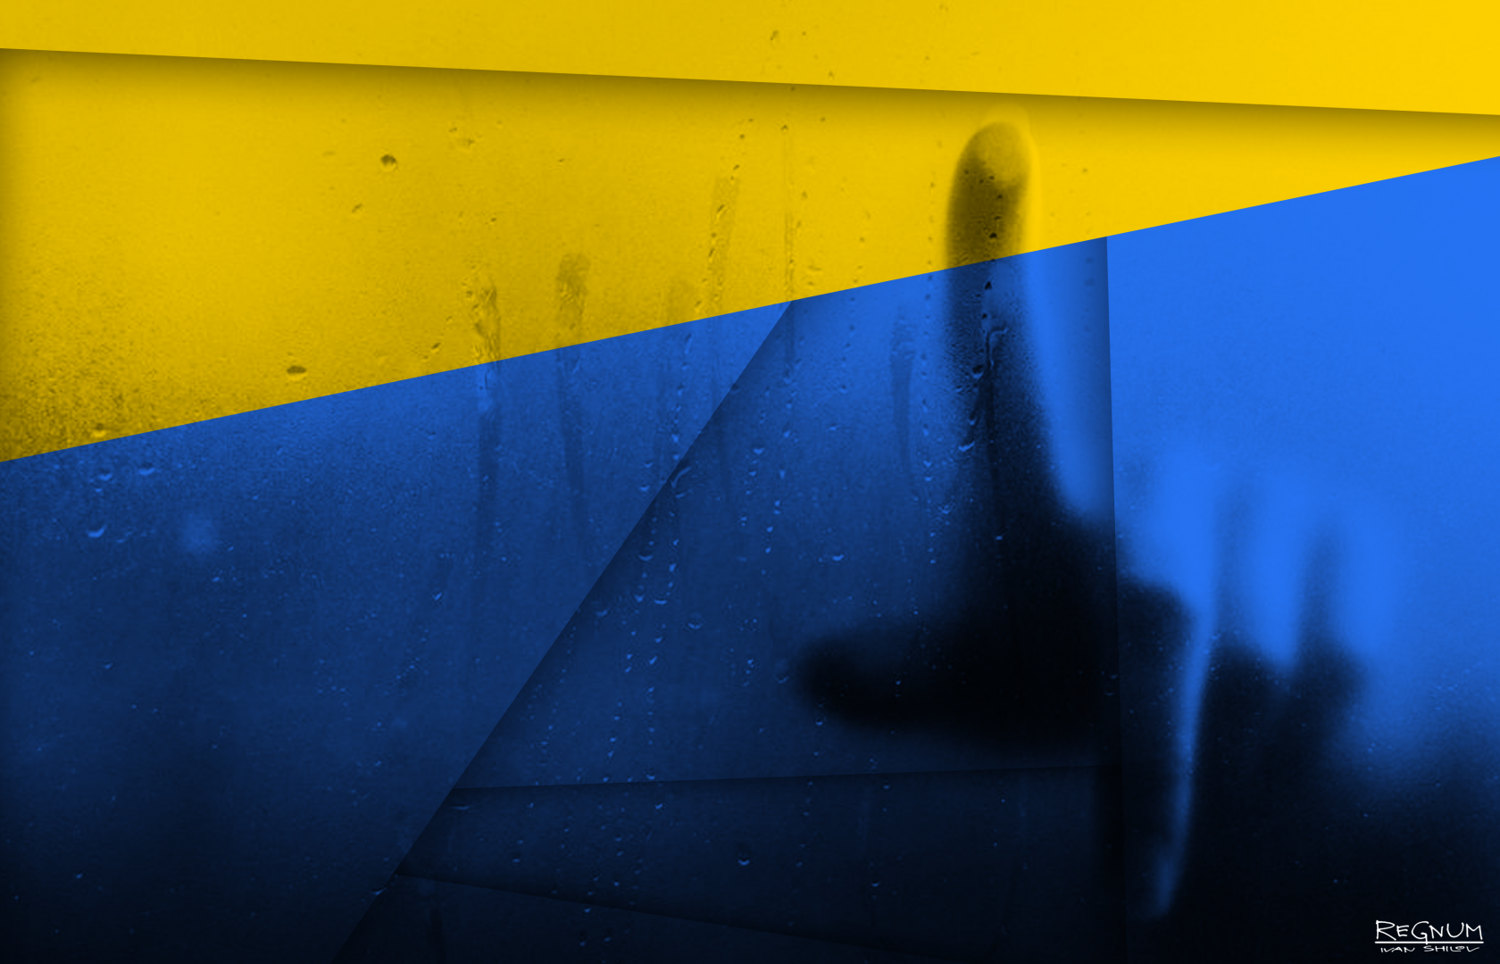 Украинский газовый транзит – оставшееся окно возможностей